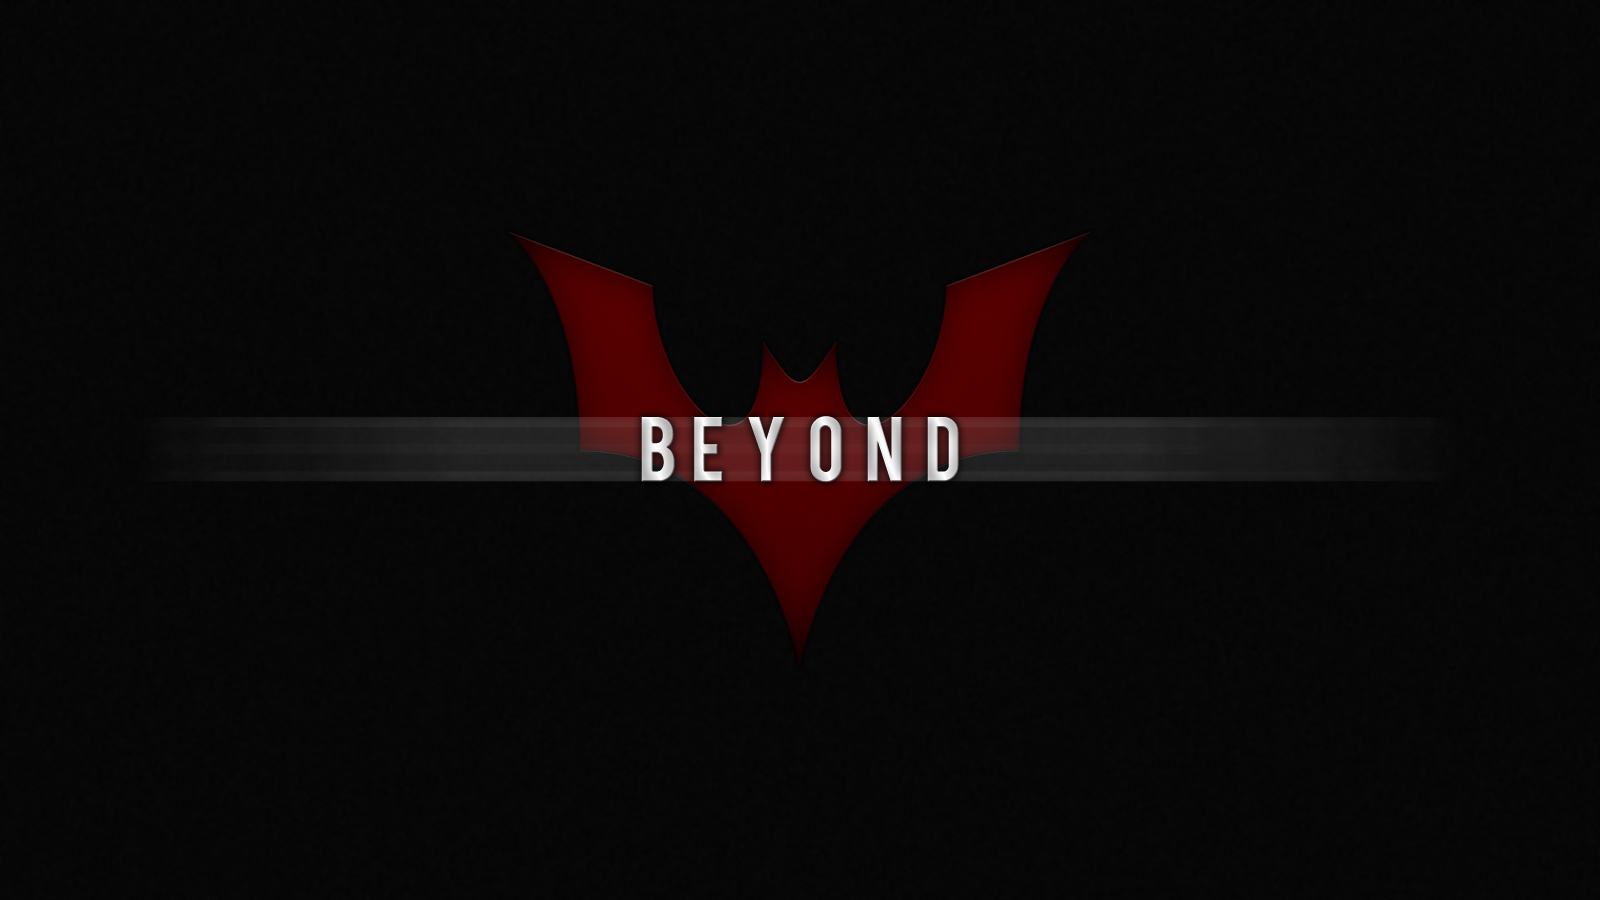 Gallery Batman Beyond HD Wallpaper 1080p